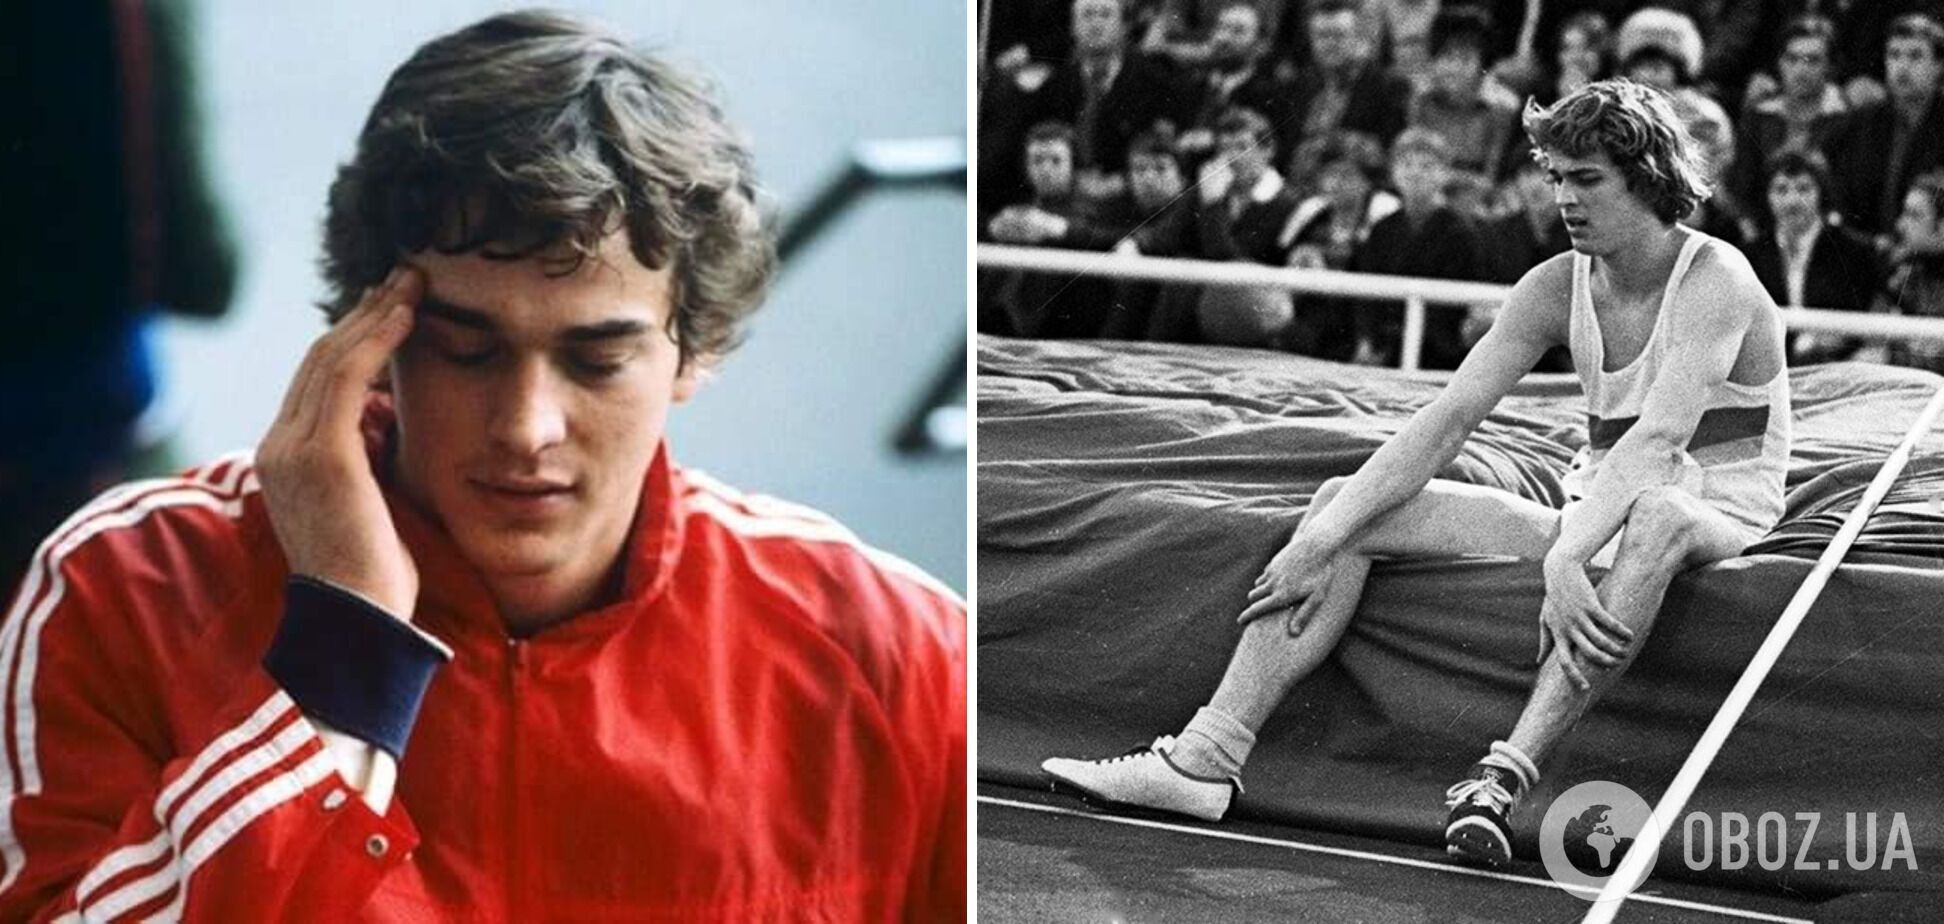 Власти СССР подставили украинского рекордсмена: гениальный прыгун сломался и умер после алкогольной комы